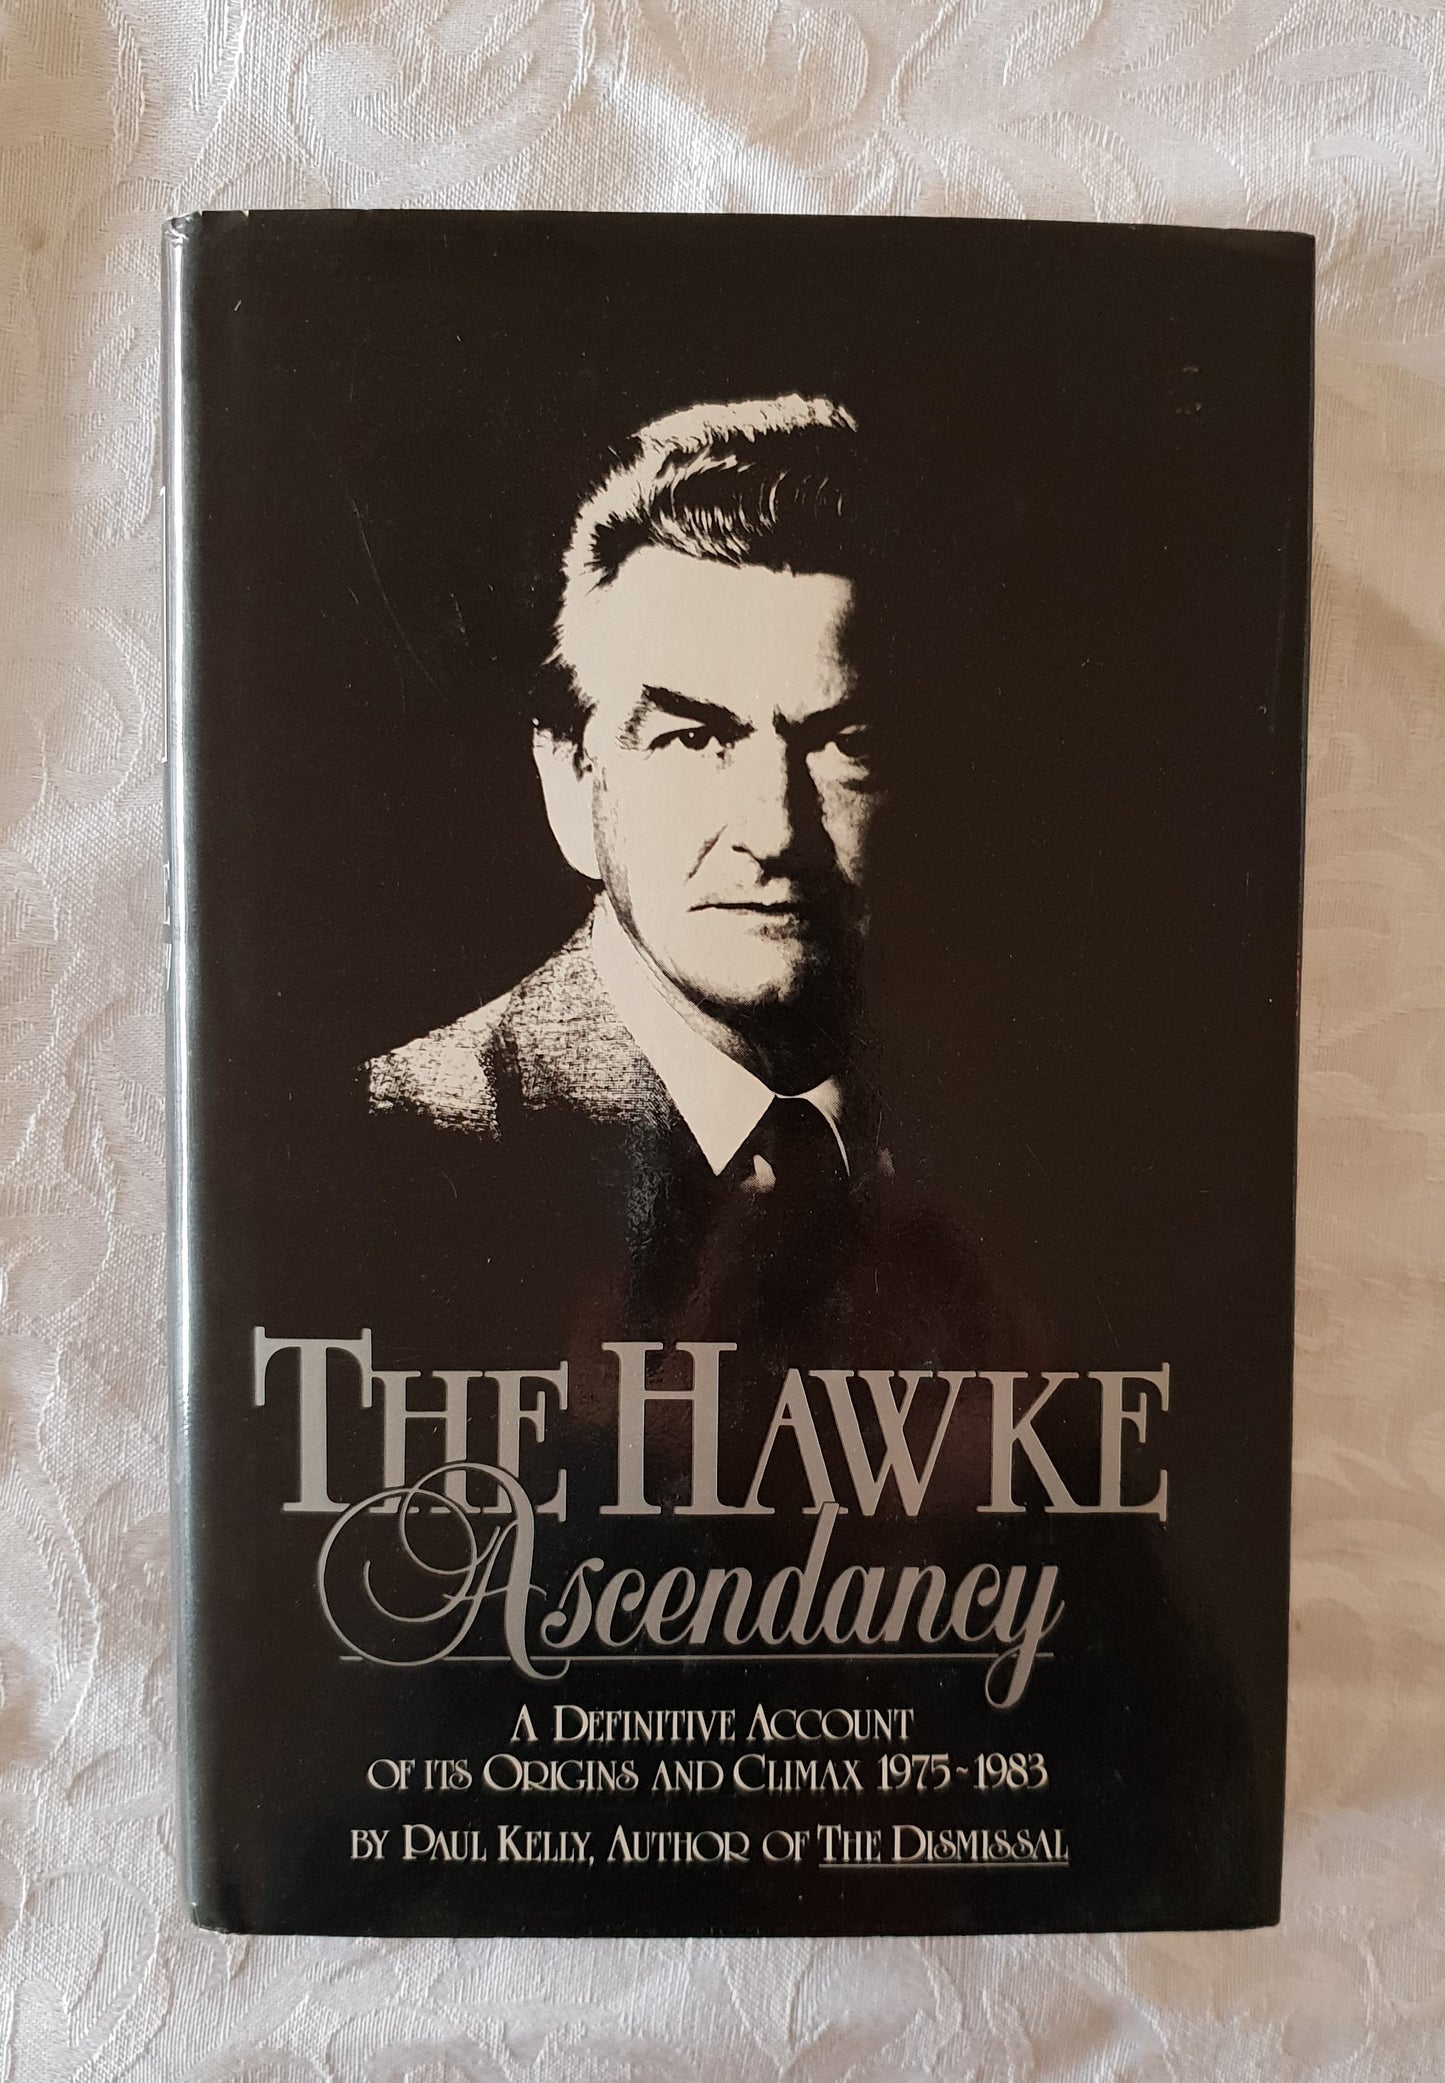 The Hawke Ascendancy by Paul Kelly